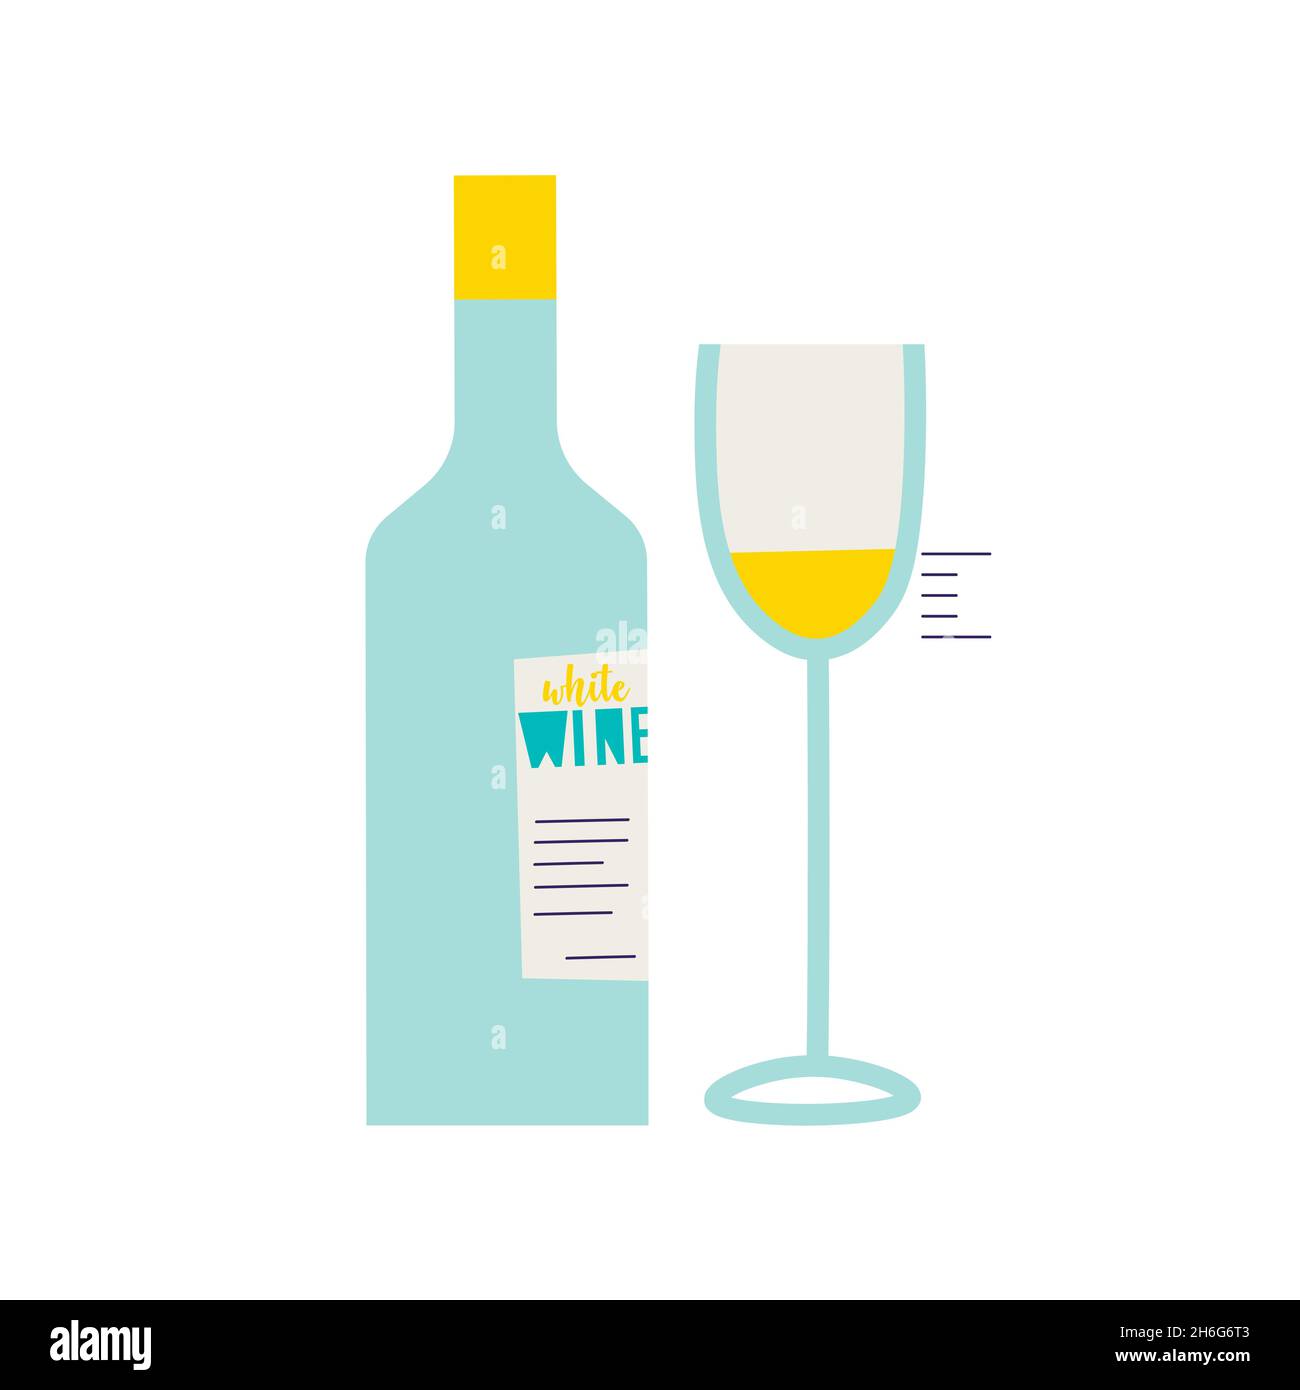 Bottiglia di vino bianco. Dose di degustazione di vino versato in un bicchiere. Illustrazioni isolate vettoriali trendy per il design. Illustrazione Vettoriale